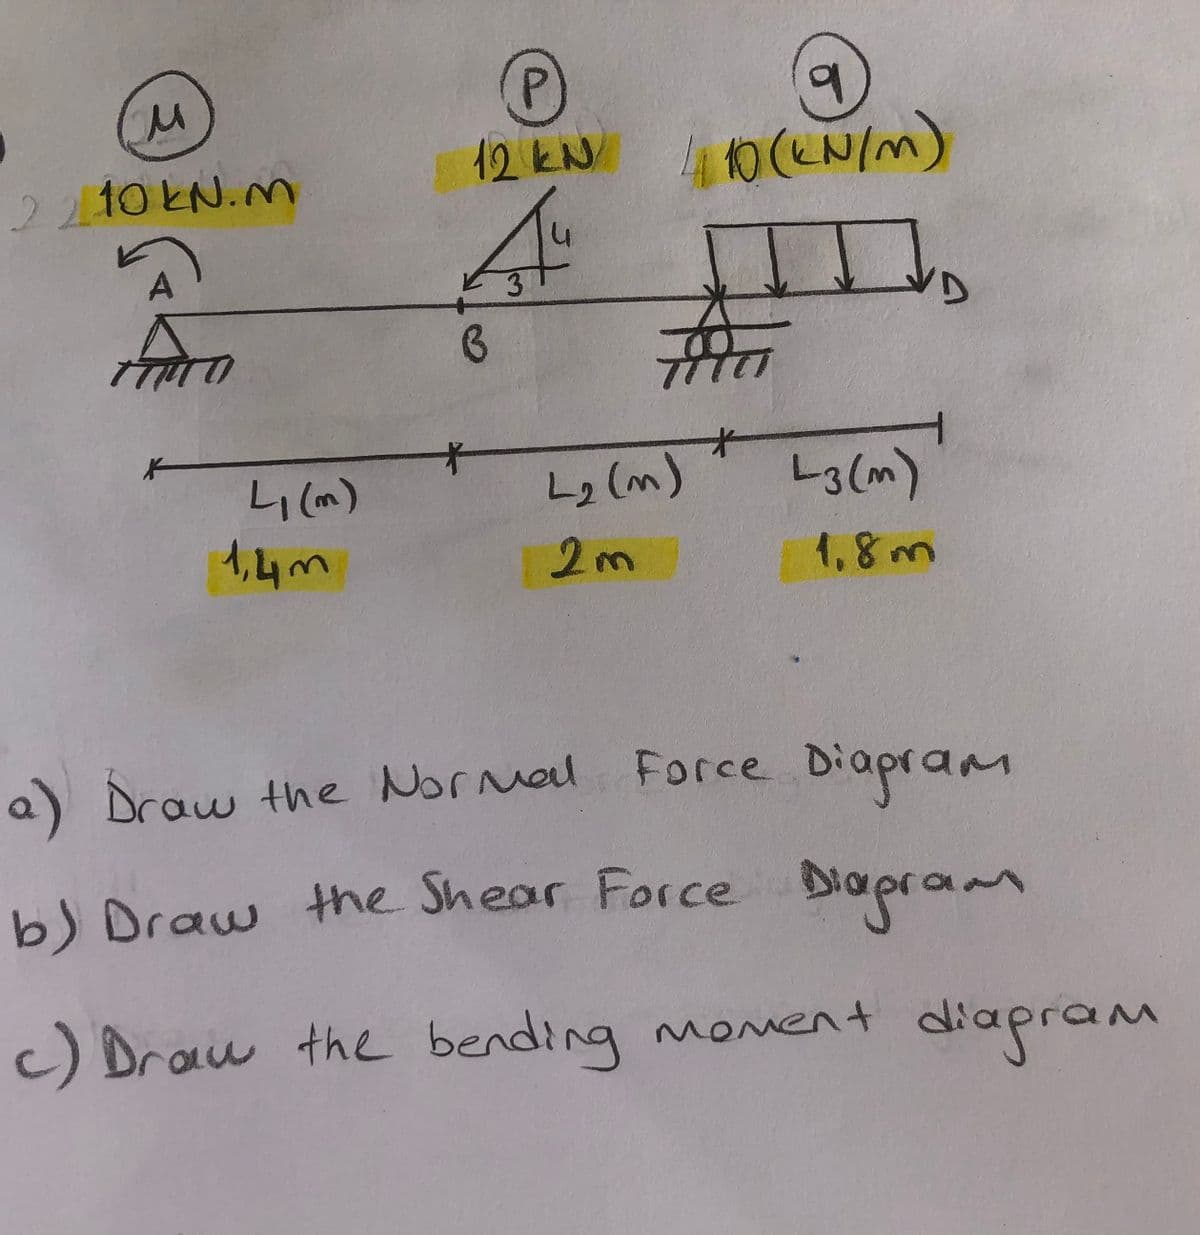 b.
410(EN/m)
P.
12KN
2210KN.Mn
L2 (m)
L3(m)
1,4m
a) Draw the Normal Force Diapram
bJ Draw the Shear Force Diapram
Diagre
c) Drau the bending moment
diagr
diapram
